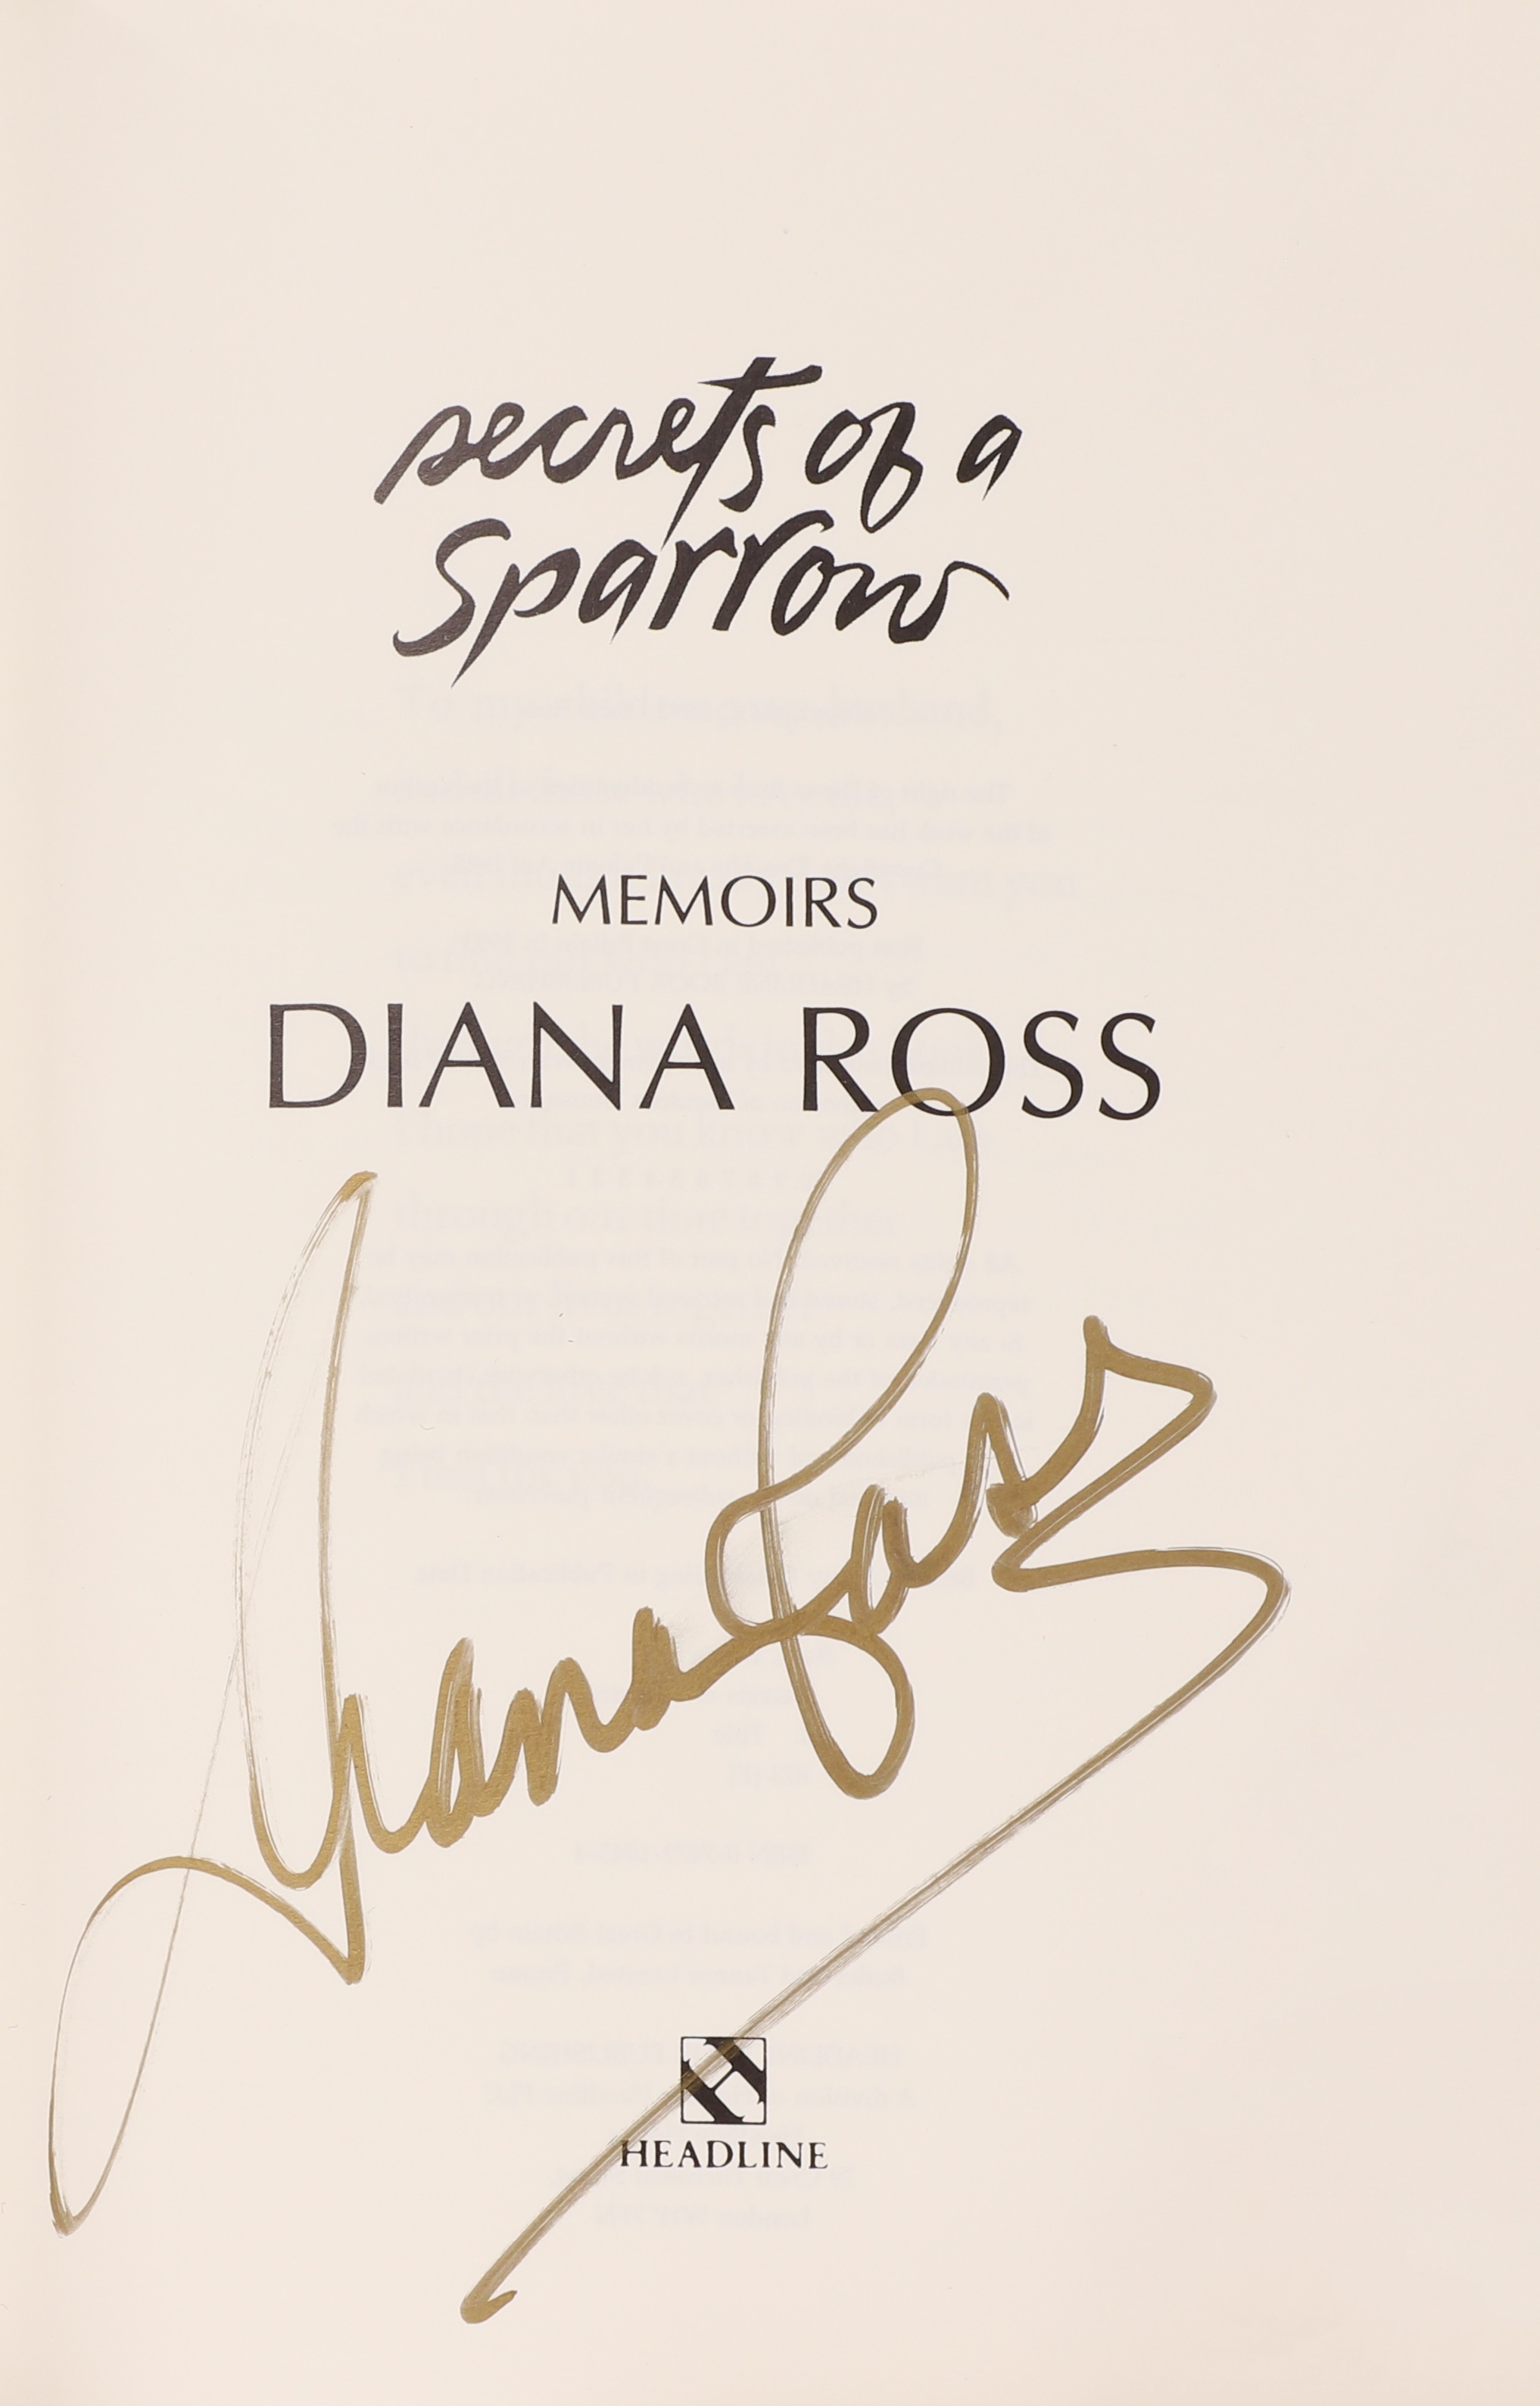 DIANA ROSS (SIGNED): Secrets of a Sparrow, Memoirs (£100-150)